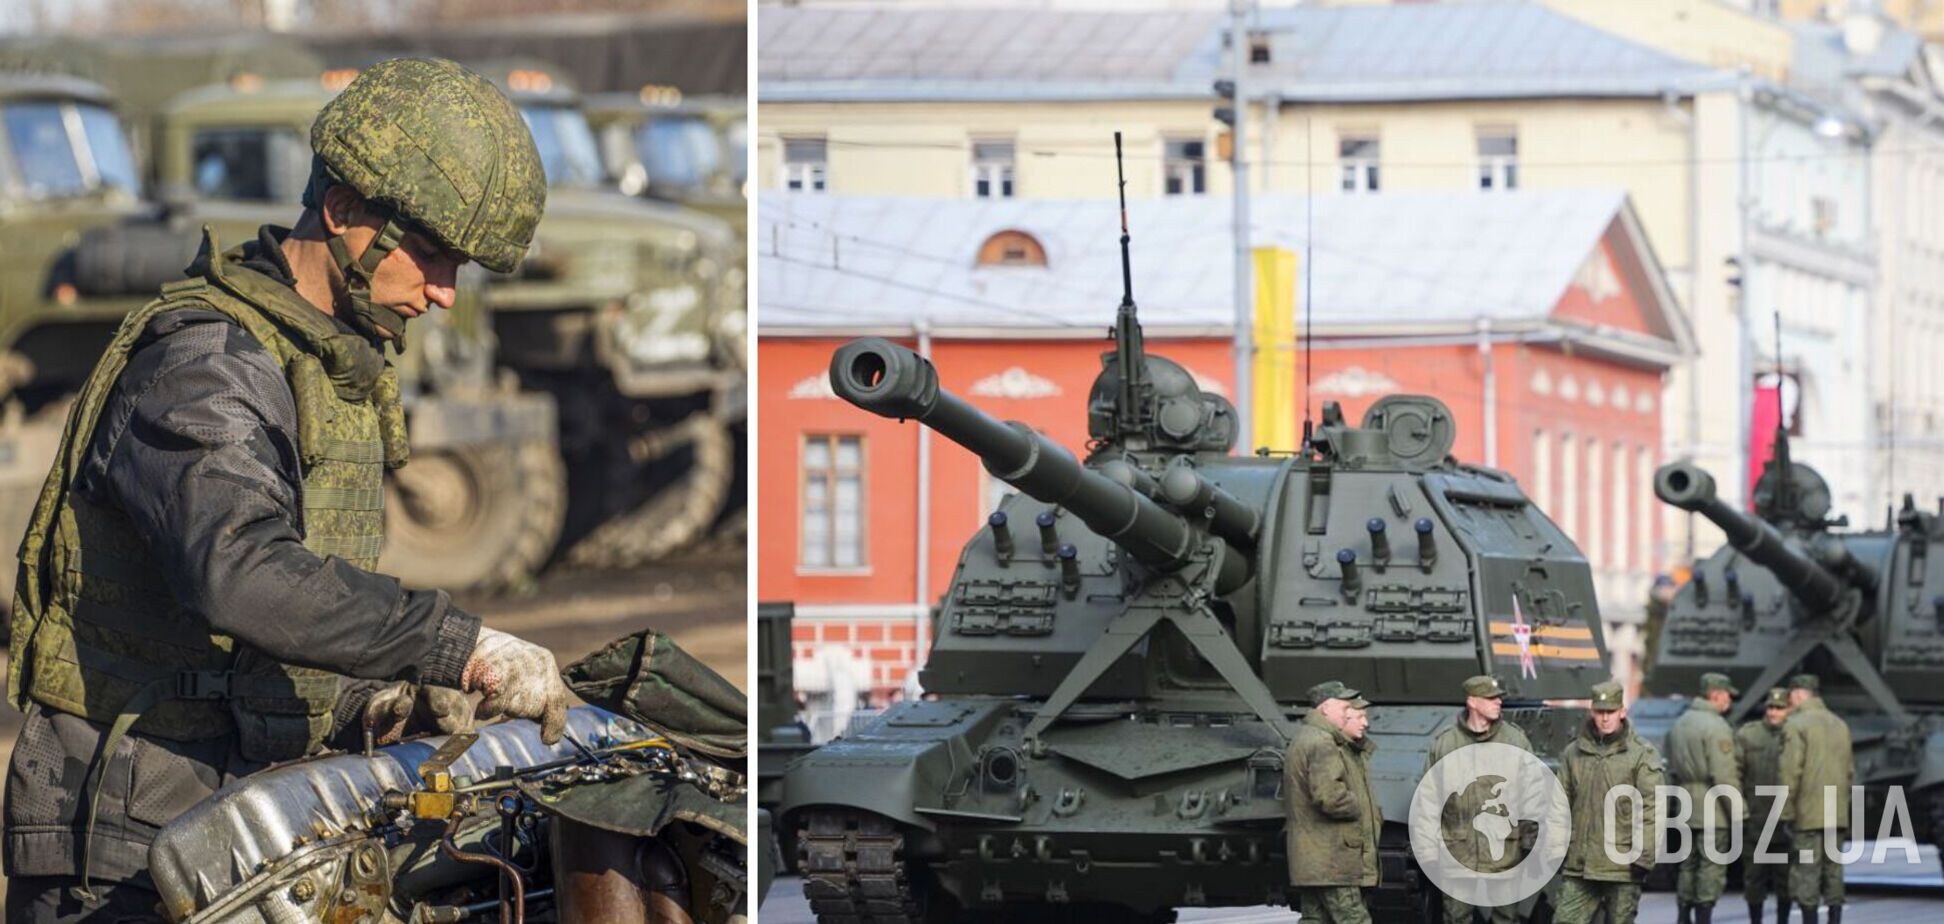 Российские военные выводят из строя свою боевую технику, чтобы избежать отправки в Украину – разведка